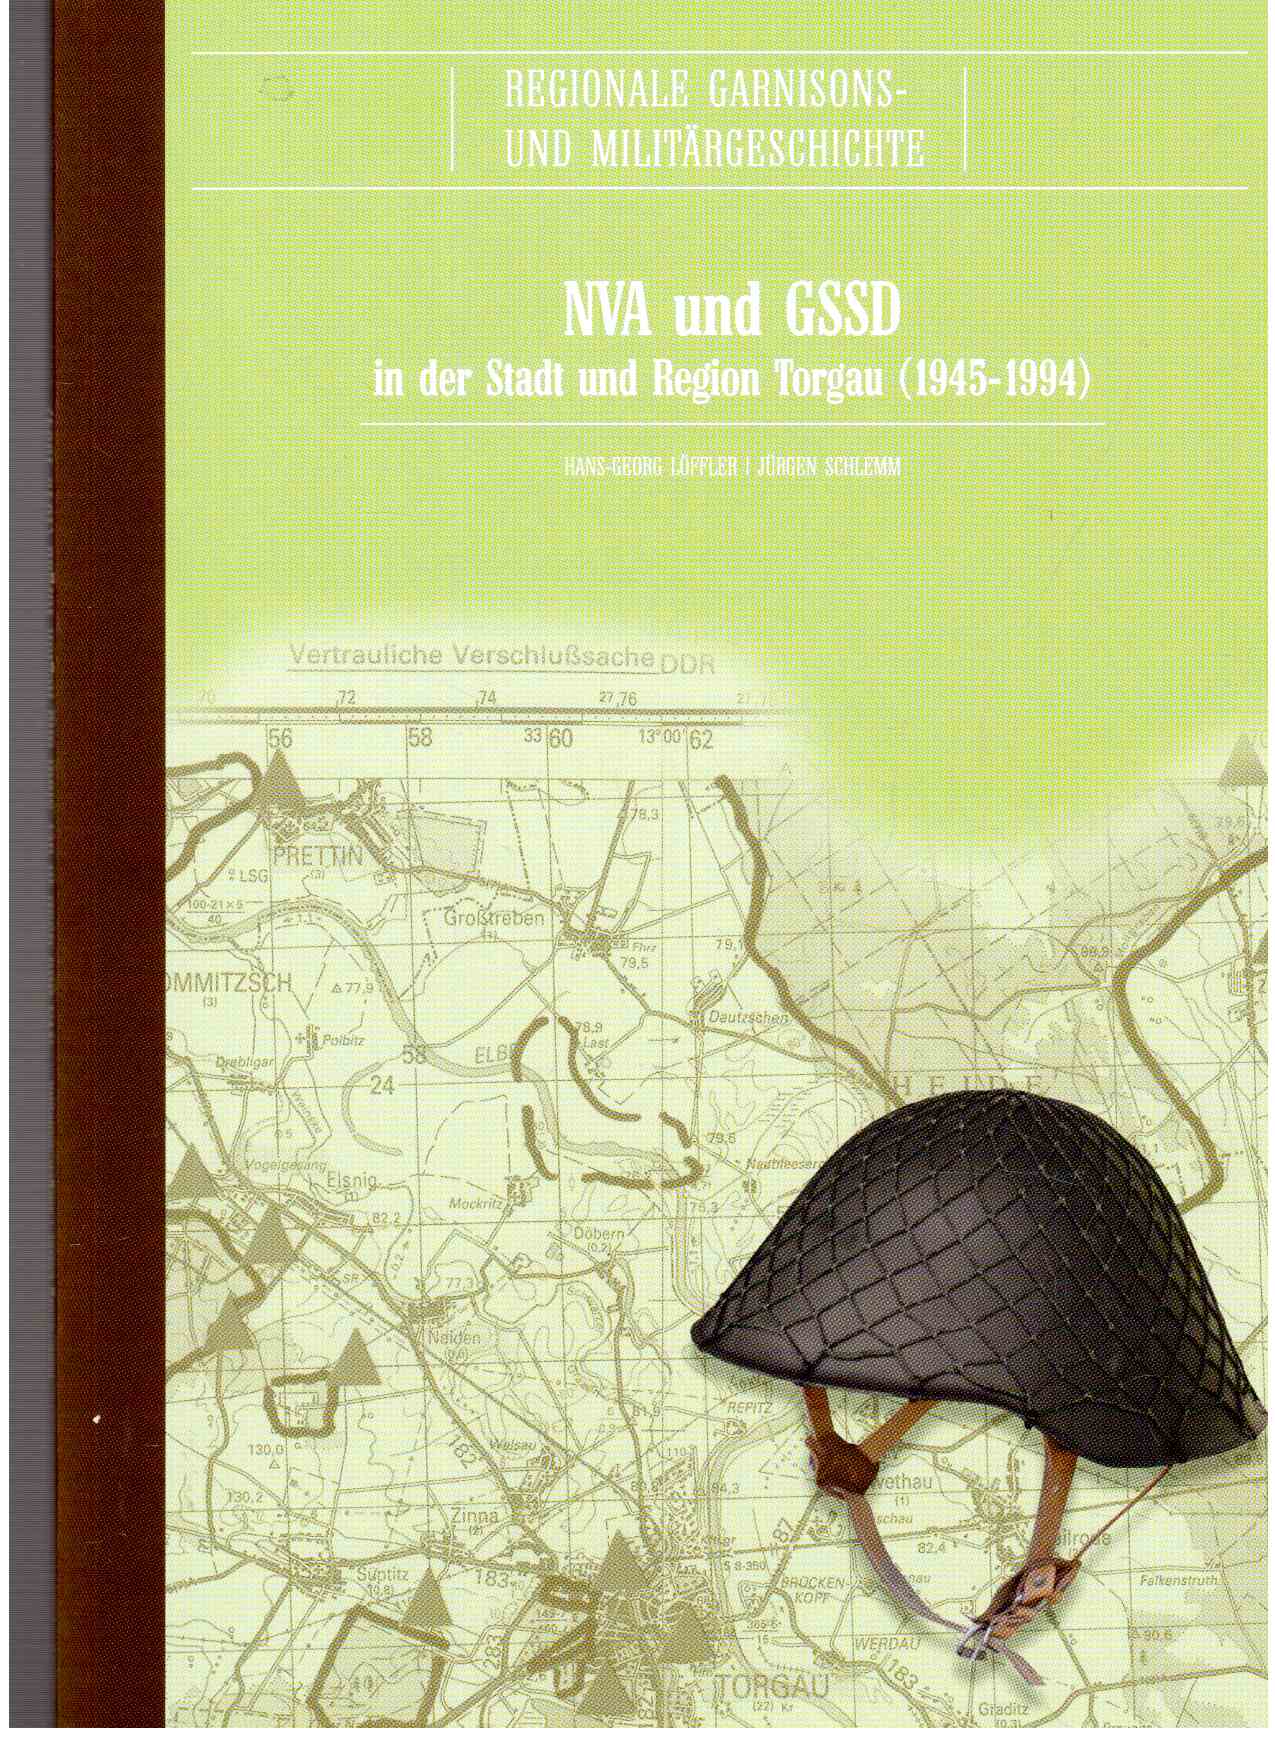 NVA und GSSD in der Stadt und Region Torgau (1945-1994)